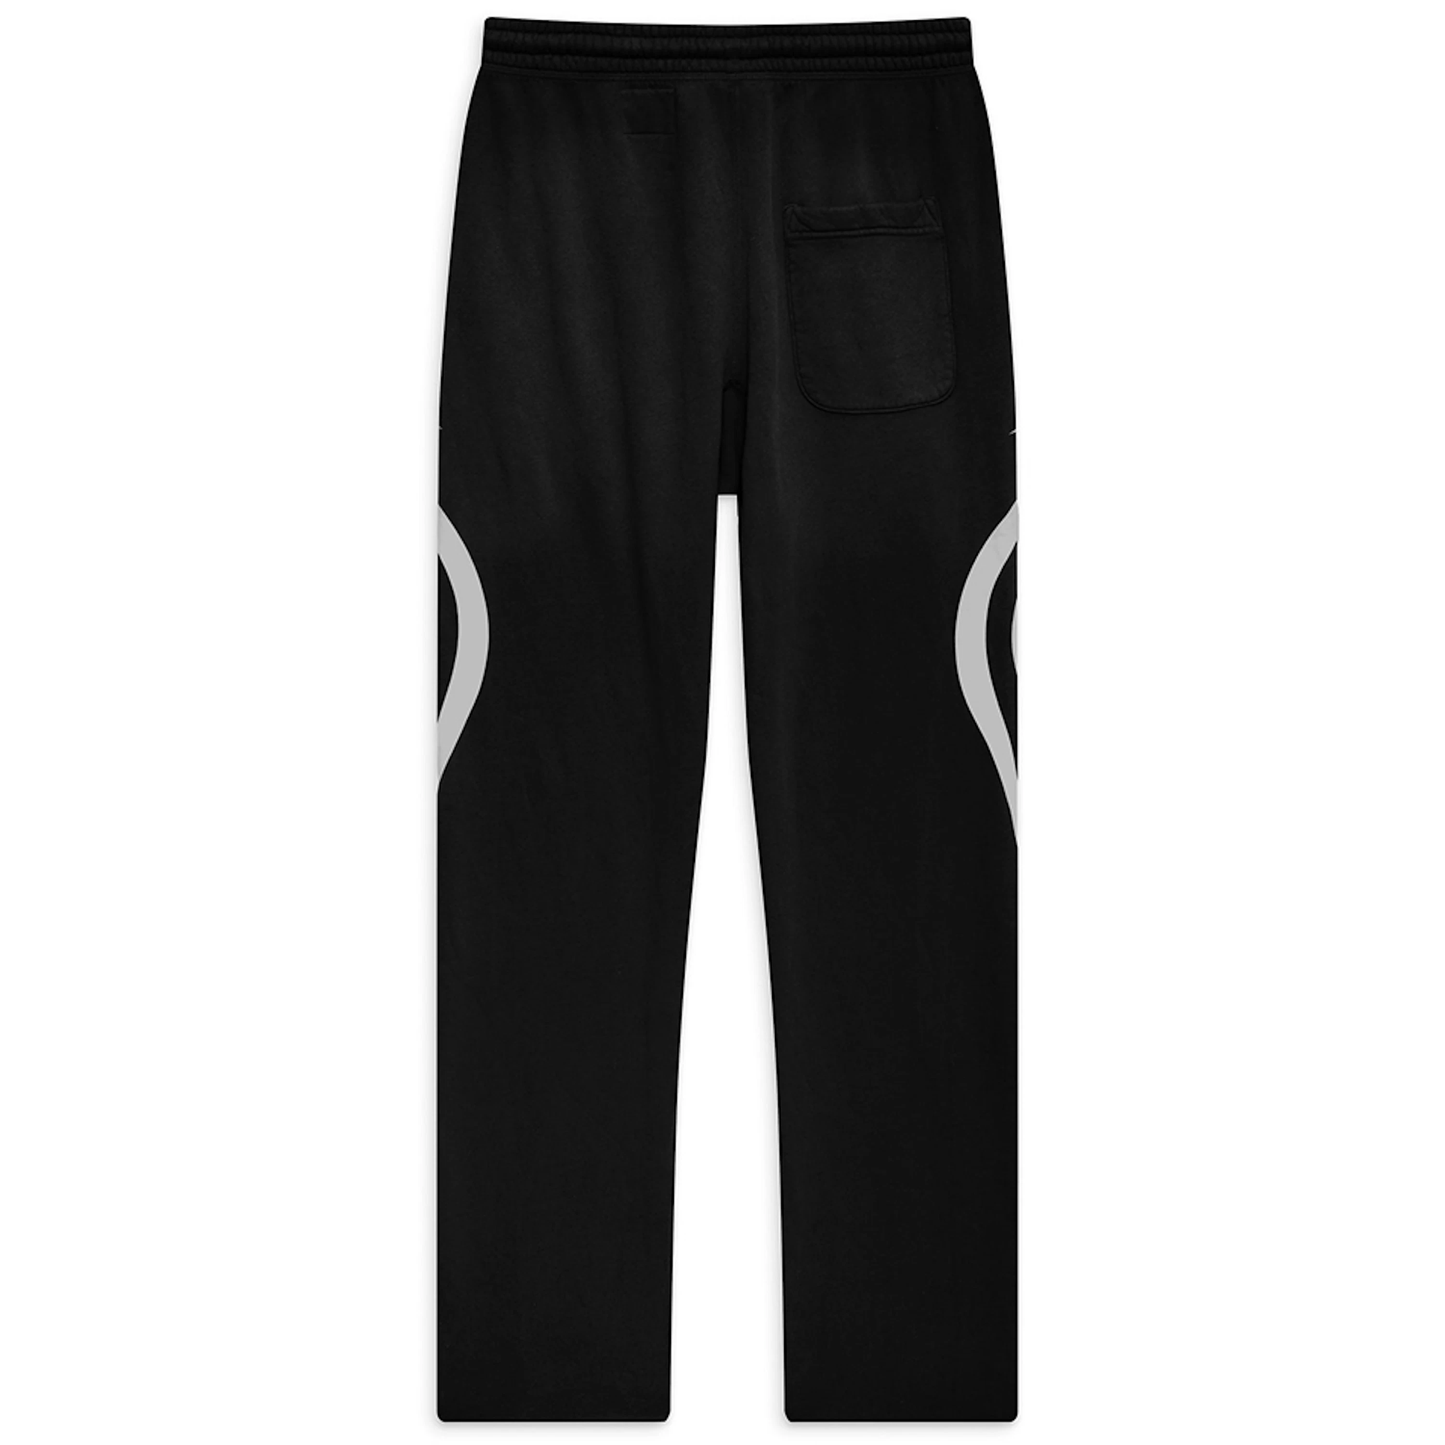 Hellstar Sports Jet Black Sweatpants